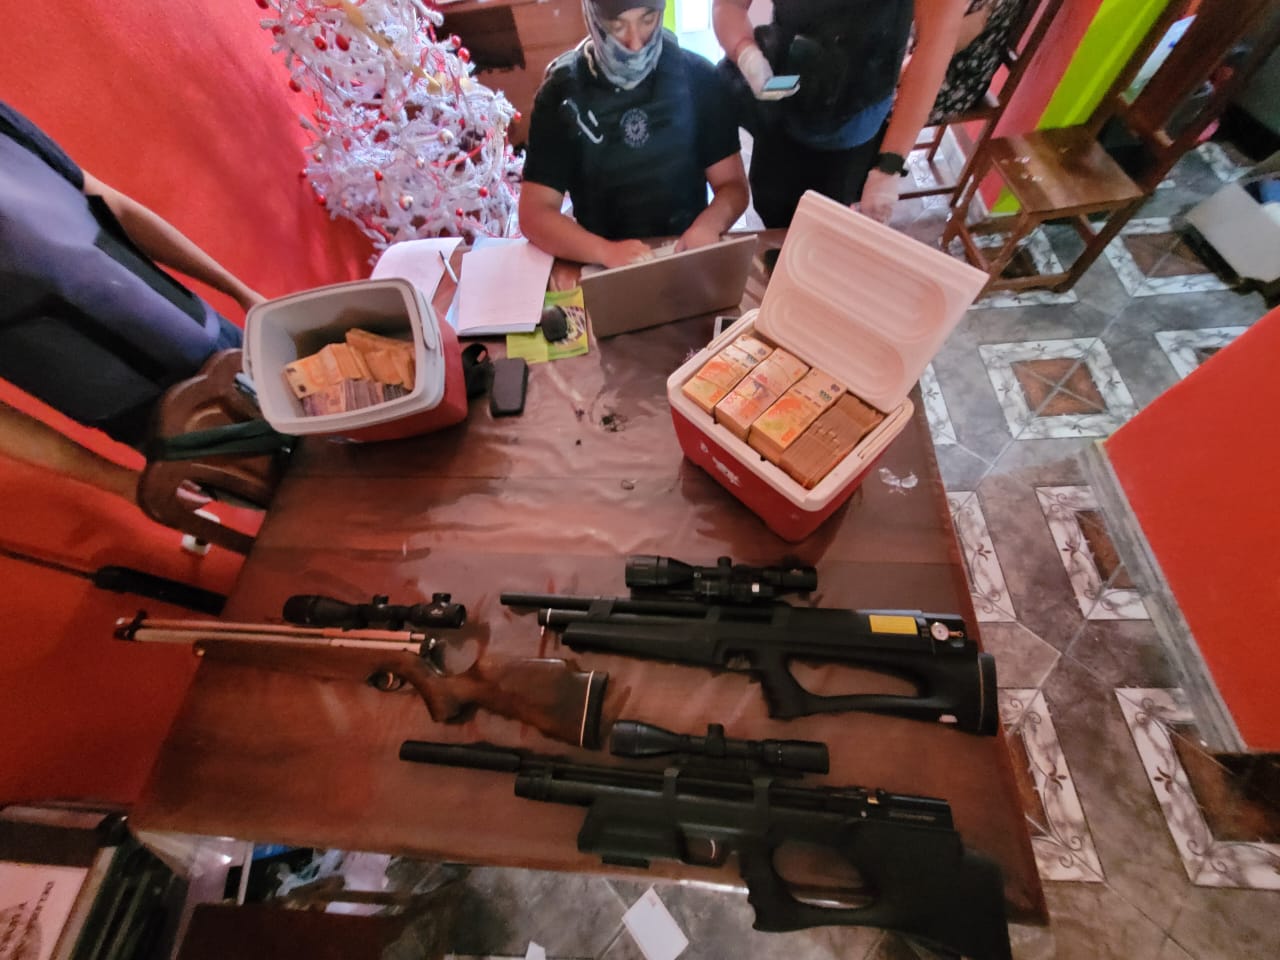 Los policías hallaron armas de aire comprimido y más de 7 millones de pesos. foto: gentileza.